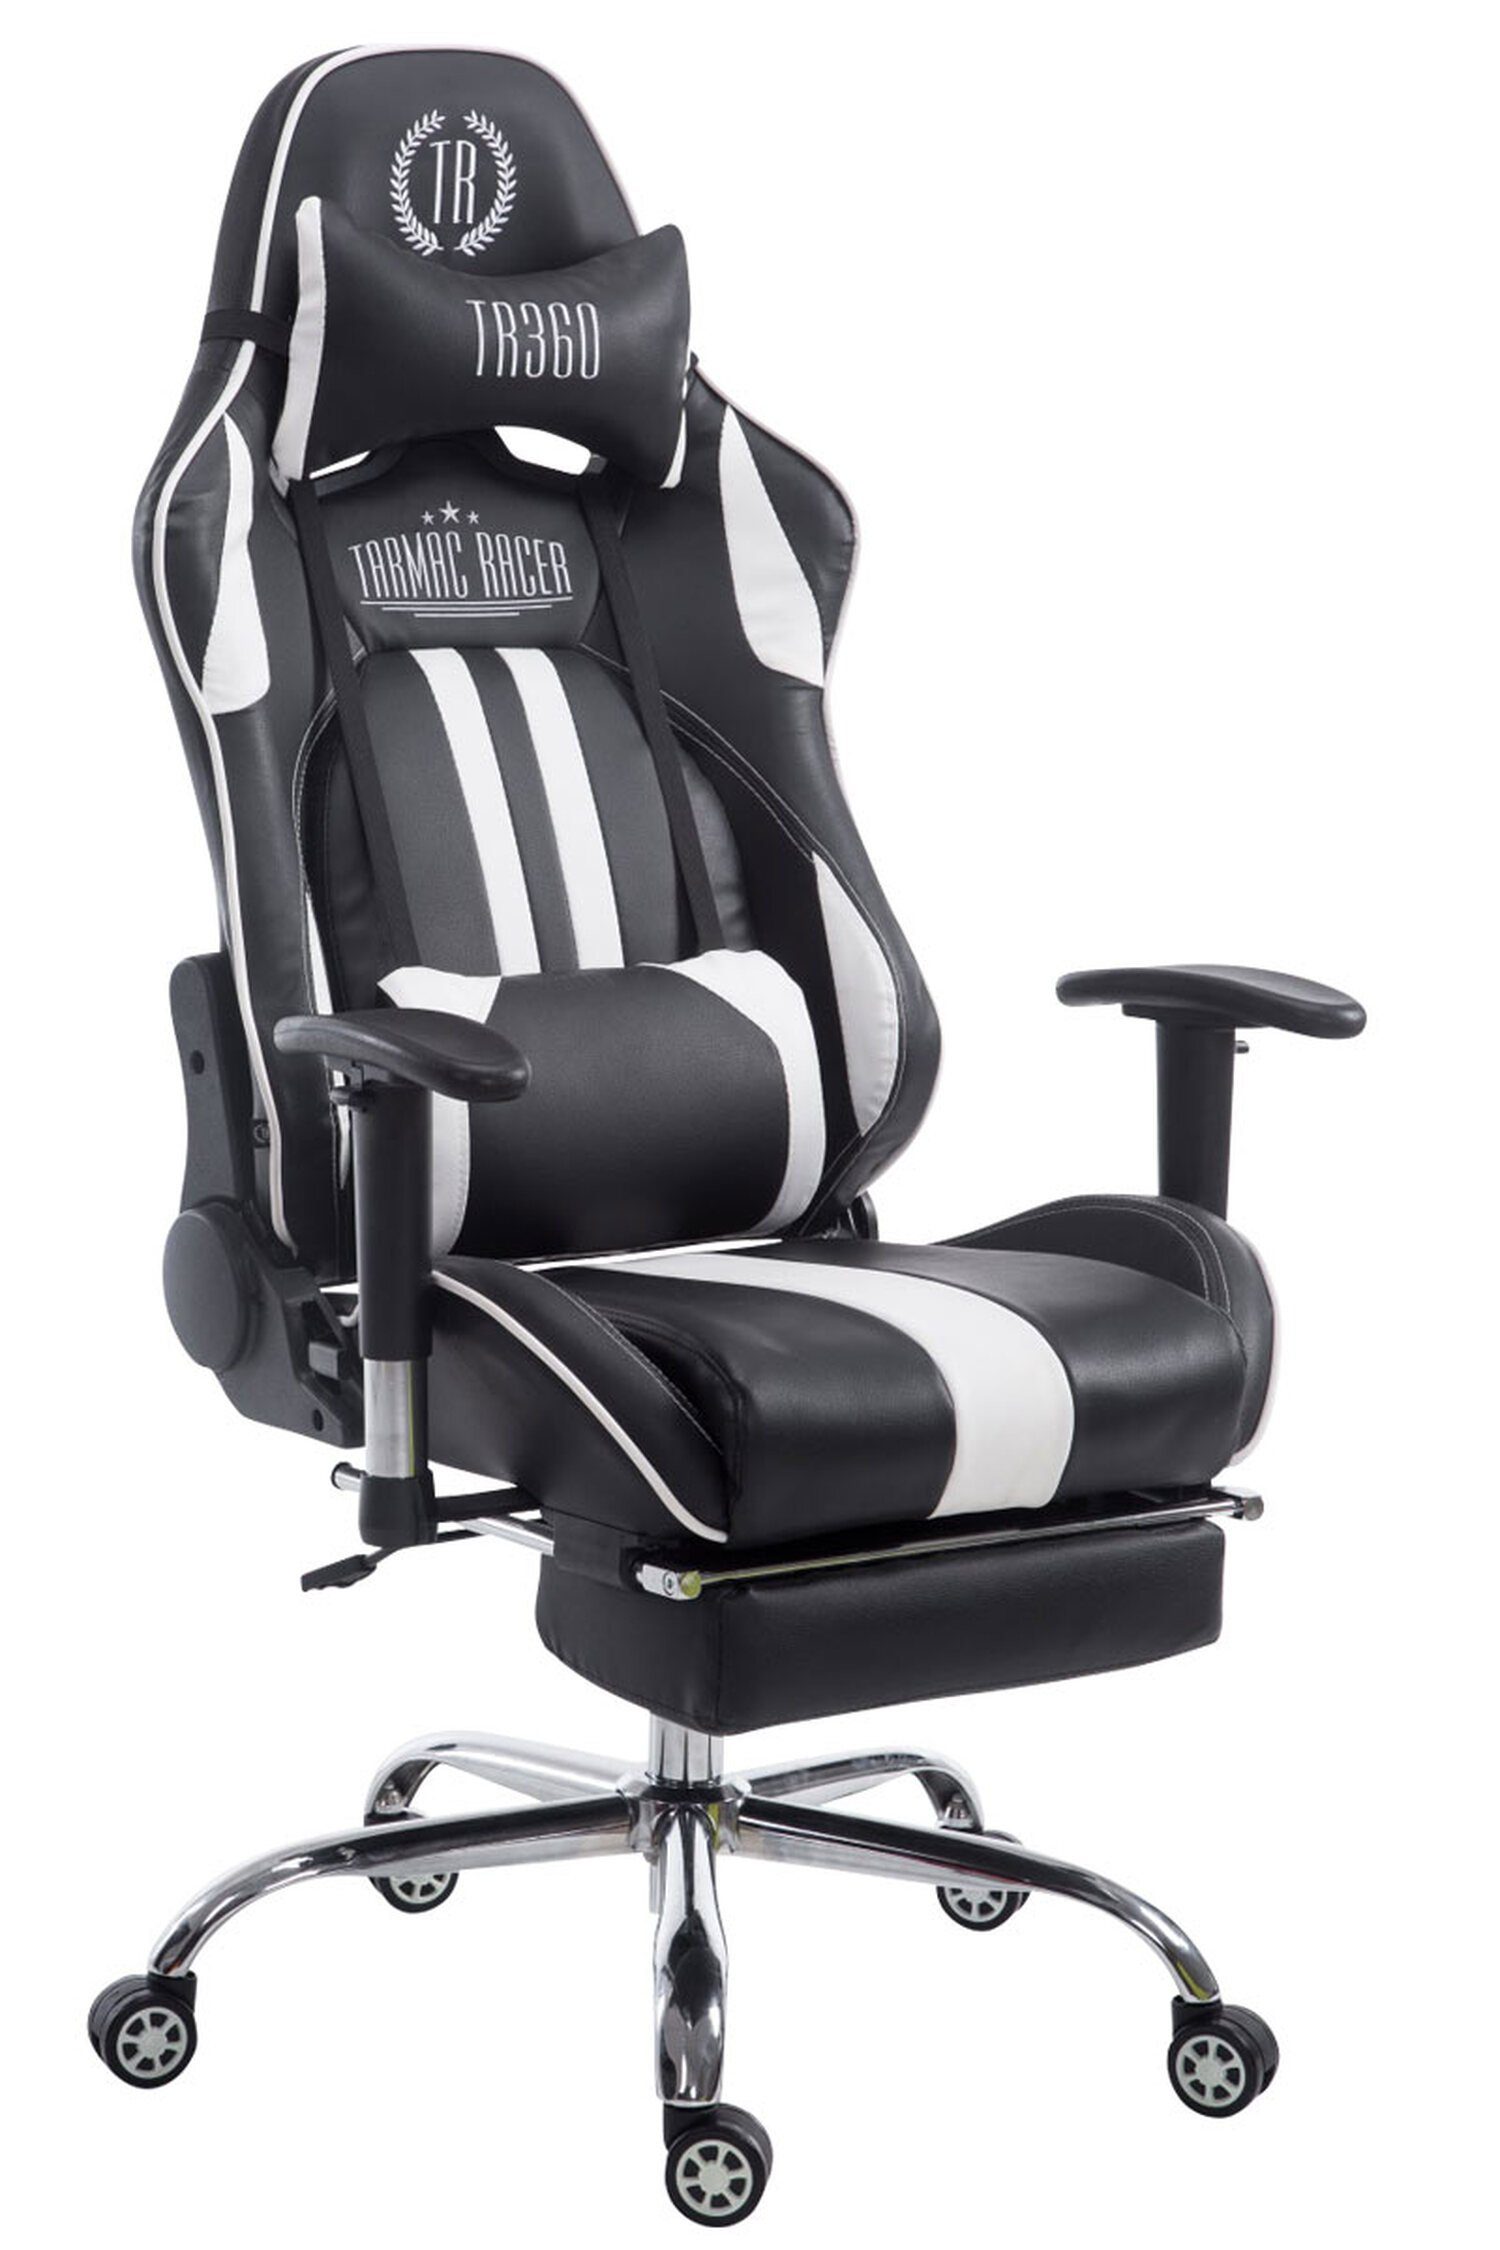 TPFLiving Gaming-Stuhl Limitless mit bequemer Rückenlehne - höhenverstellbar und 360° drehbar (Schreibtischstuhl, Drehstuhl, Gamingstuhl, Racingstuhl, Chefsessel), Gestell: Metall chrom - Sitzfläche: Kunstleder schwarz/weiß